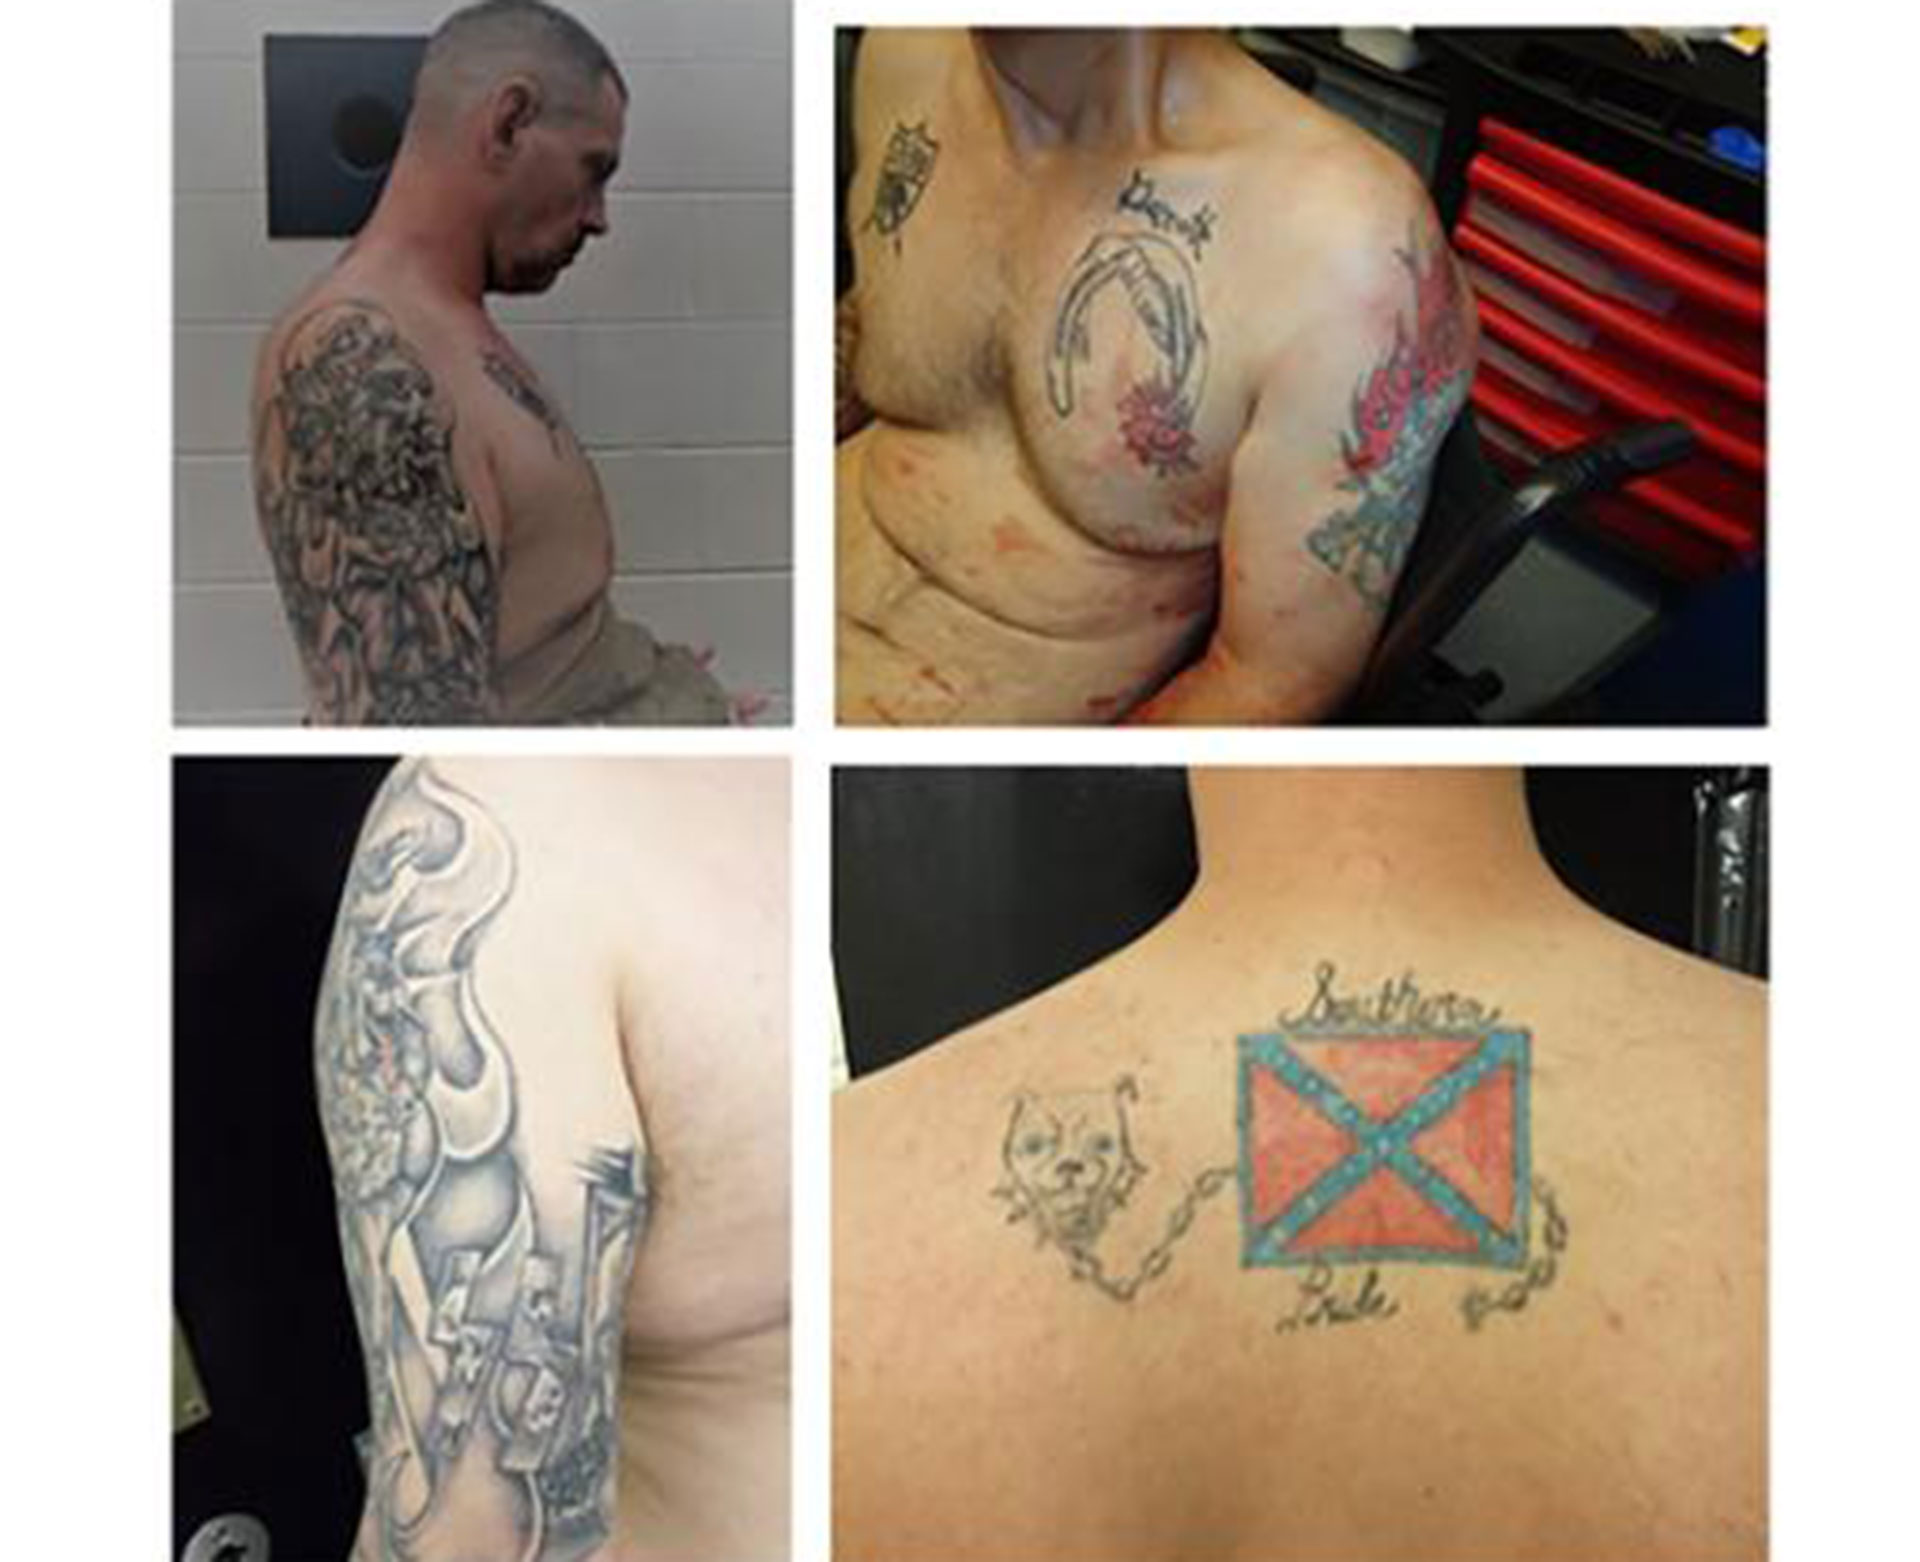 Los tatuajes de Casey White (Servicio de Alguaciles de Estados Unidos)